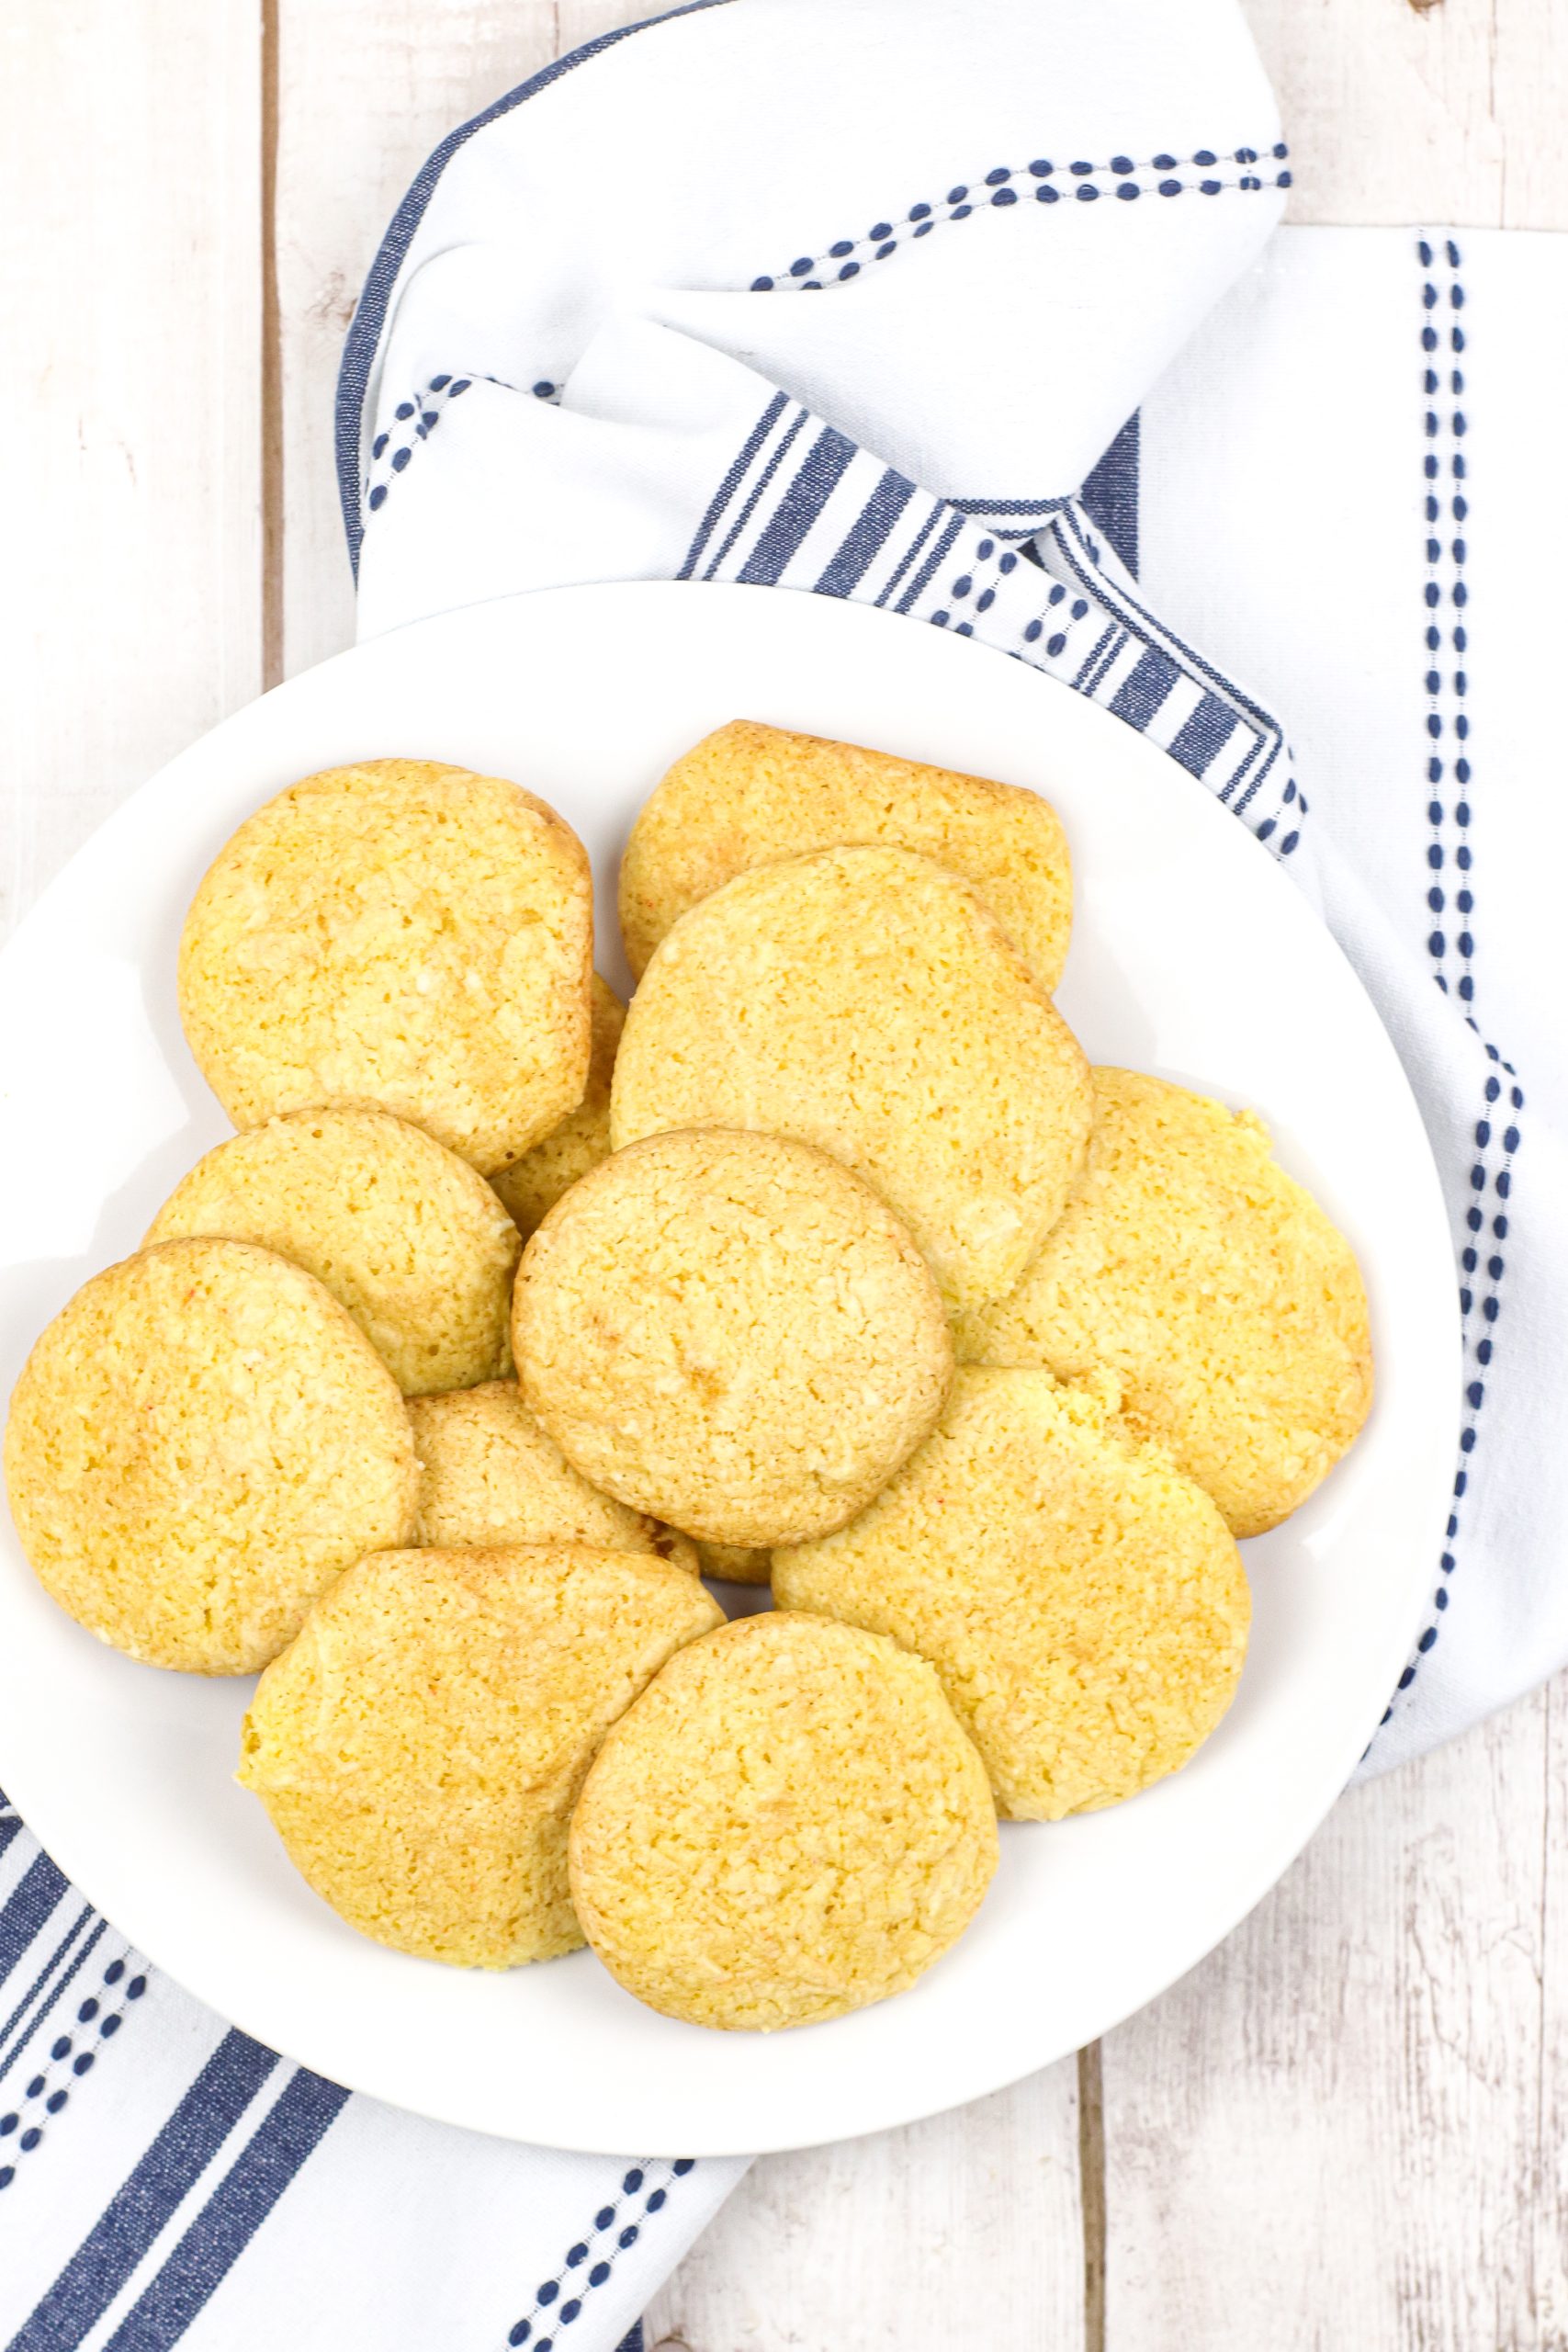 Cake Mix Cookies Recipe - Easy Homemade Cookies Fast!